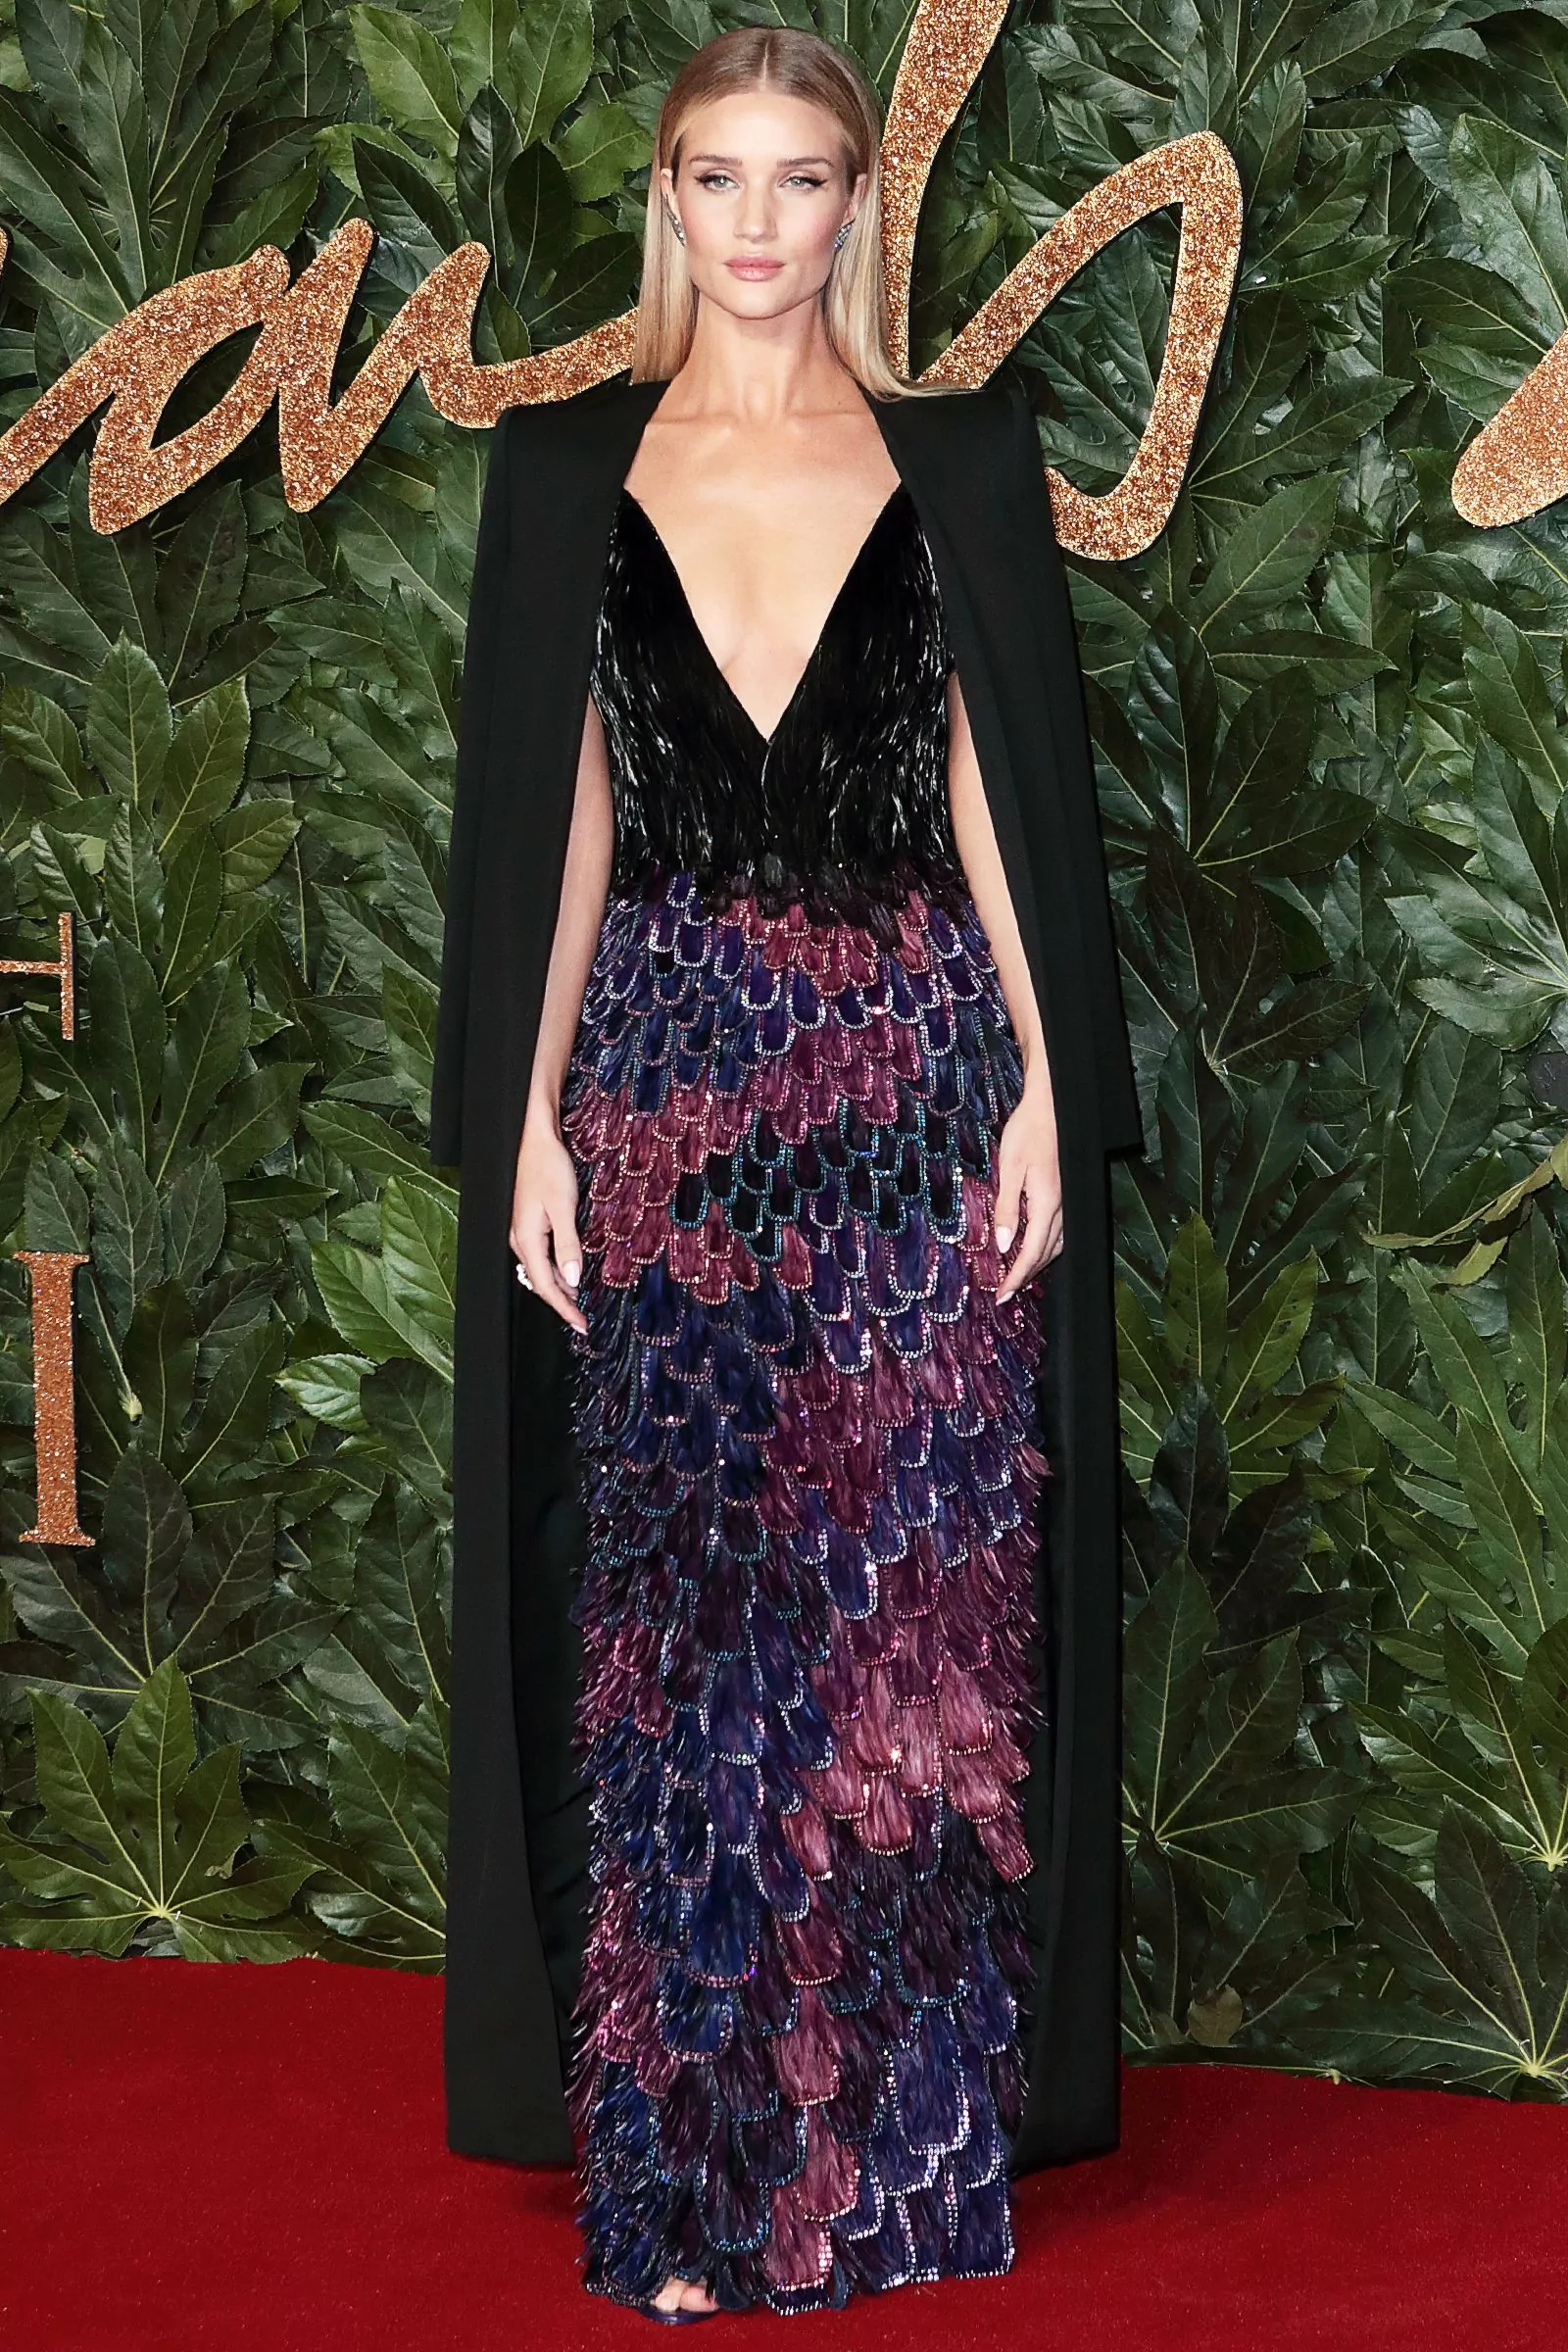 Роузи Хантингтон-Уайтли на церемонии вручения премии British Fashion Awards в Лондоне, 10 декабря 2018 г.